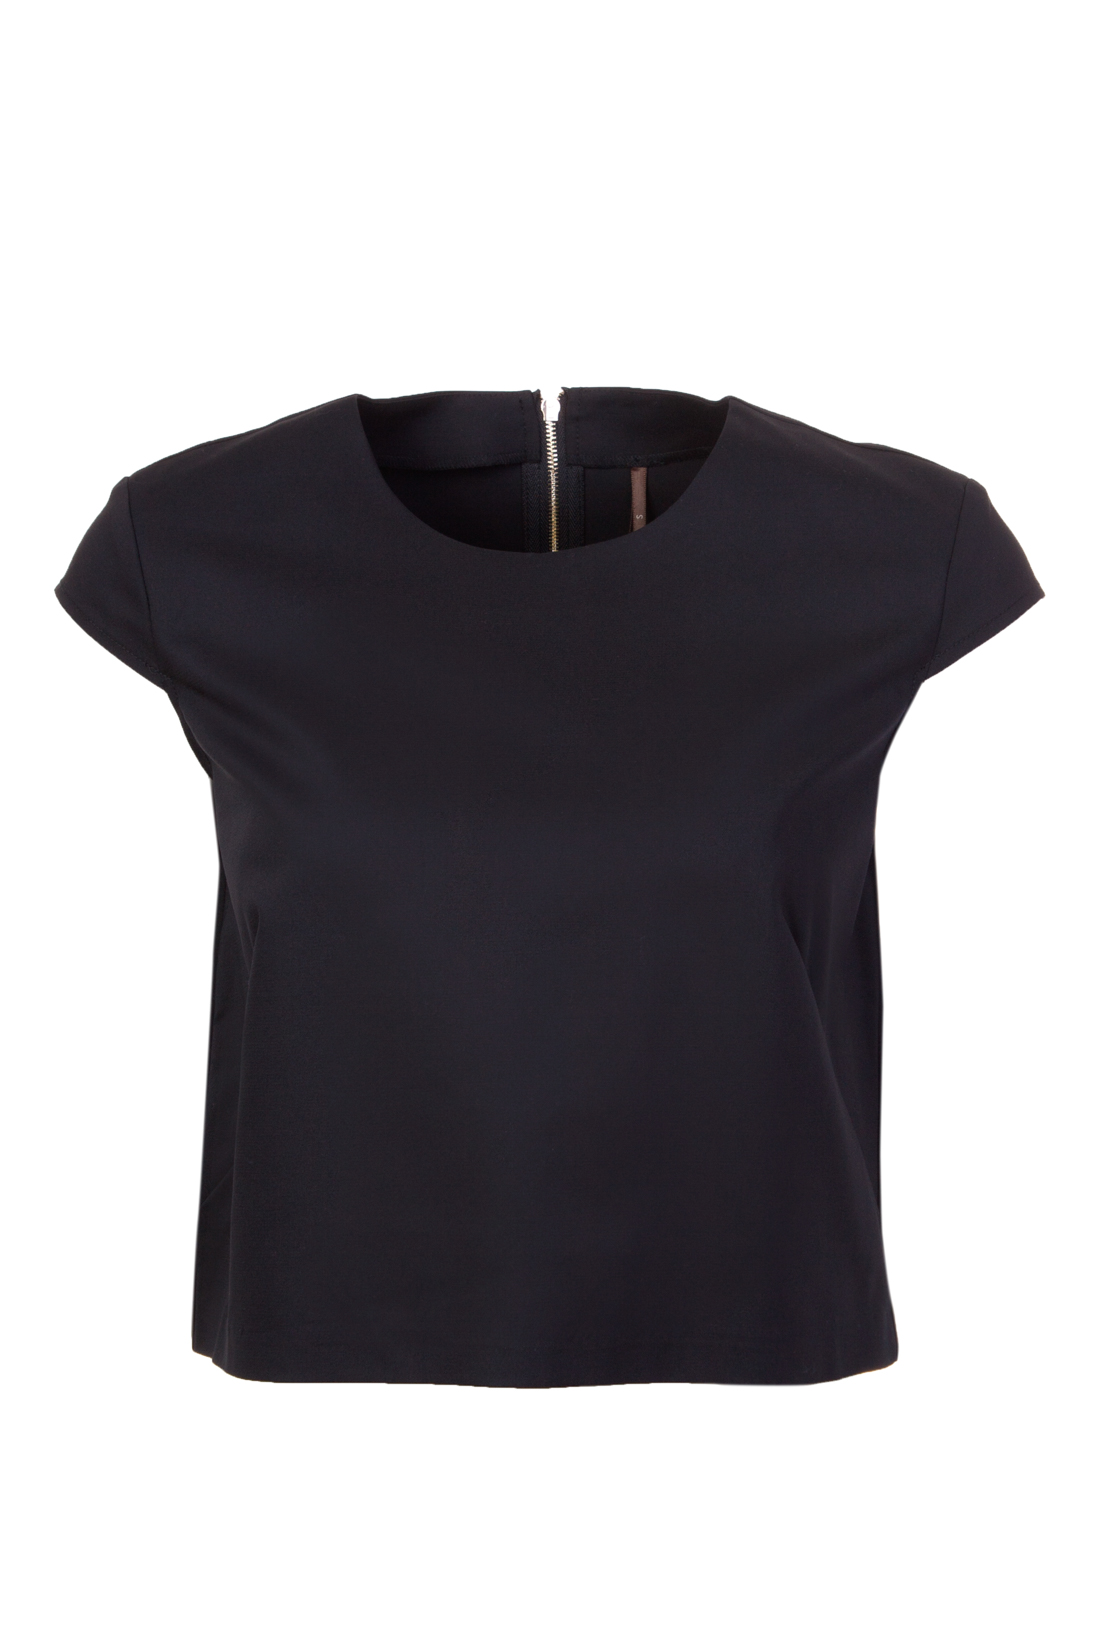 Блузка с молнией на спине (арт. baon B197031), размер L, цвет черный Блузка с молнией на спине (арт. baon B197031) - фото 4